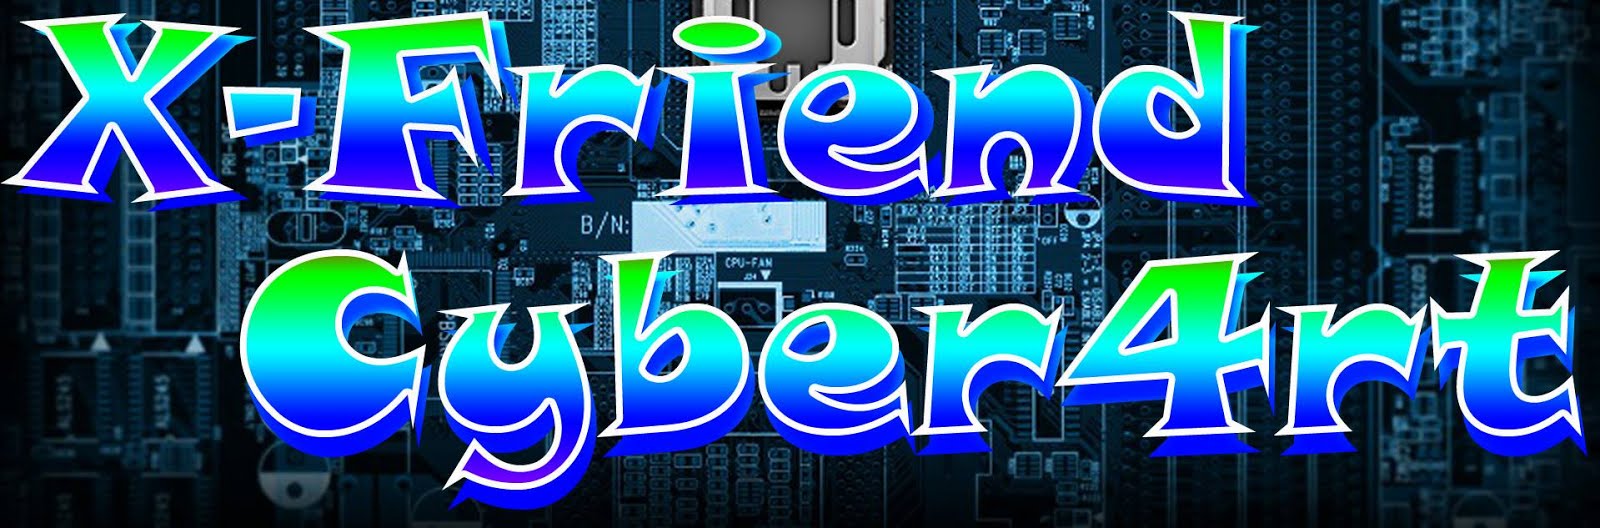 X-Friend Cyber4rt